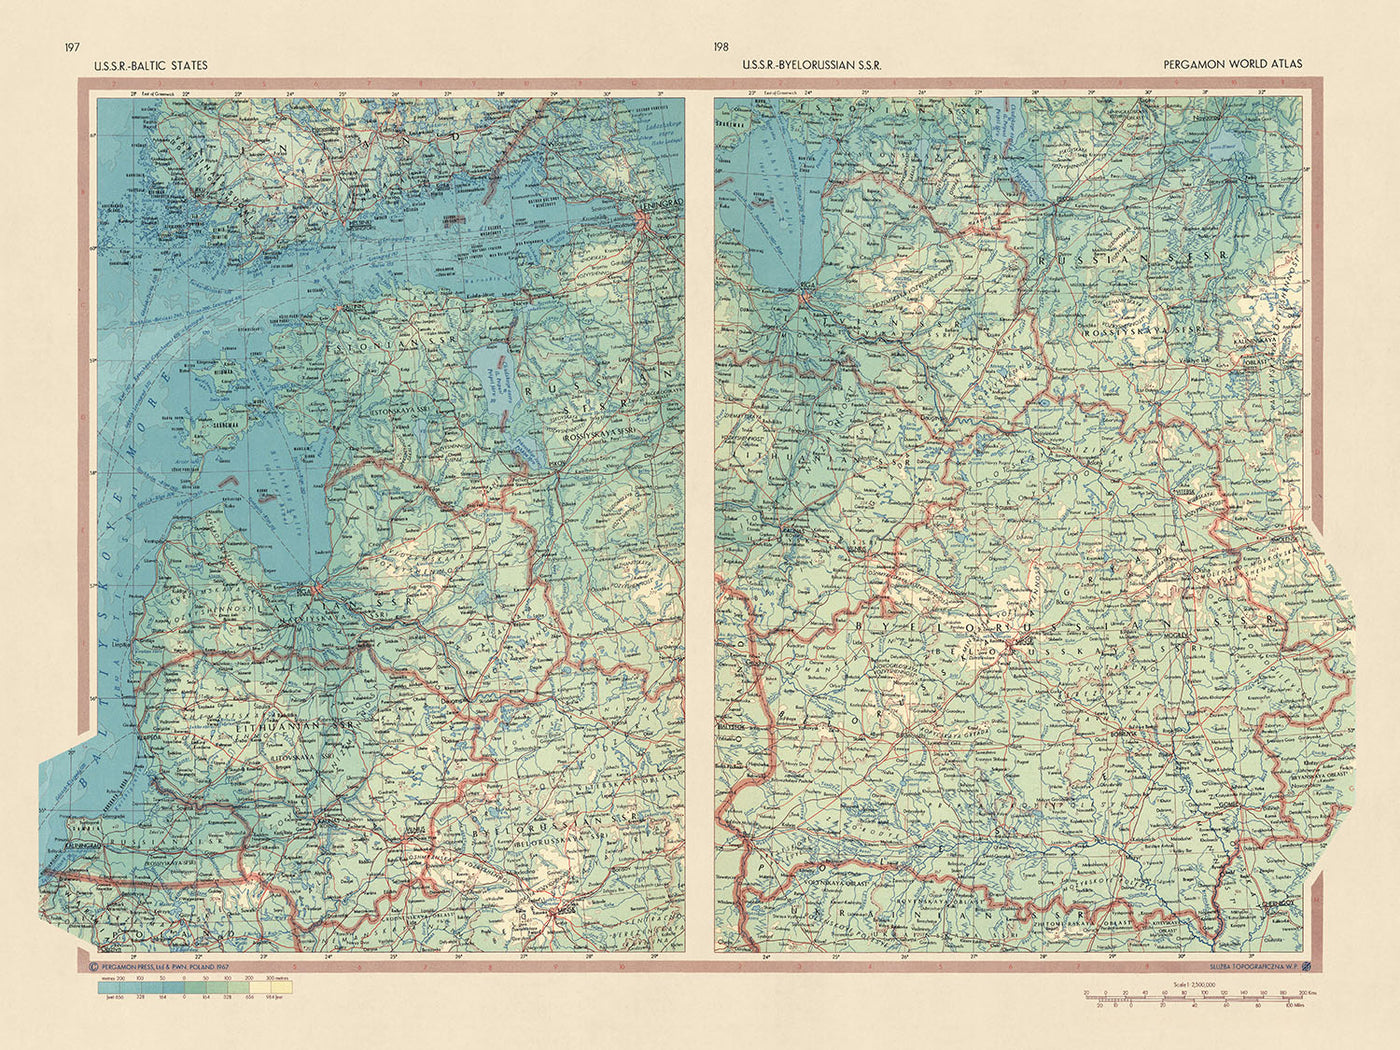 Ancienne carte des États baltes et de la Biélorussie, Service topographique de l'armée polonaise, 1967 : Riga, Minsk, Vilnius, golfe de Riga, lagune de Courlande